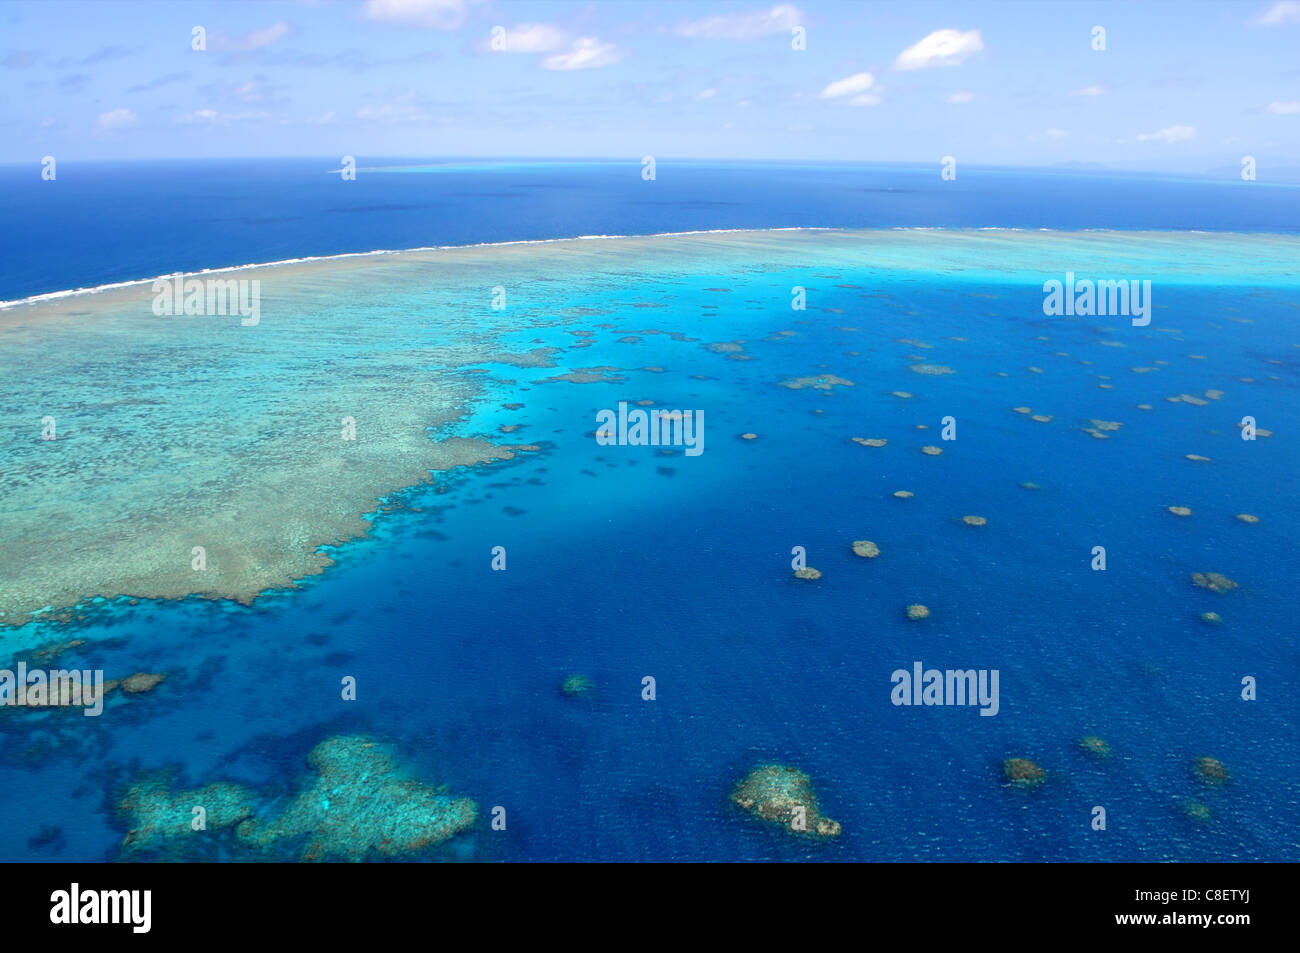 Great Barrier Reef, Cairns Australien von oben gesehen Stockfoto